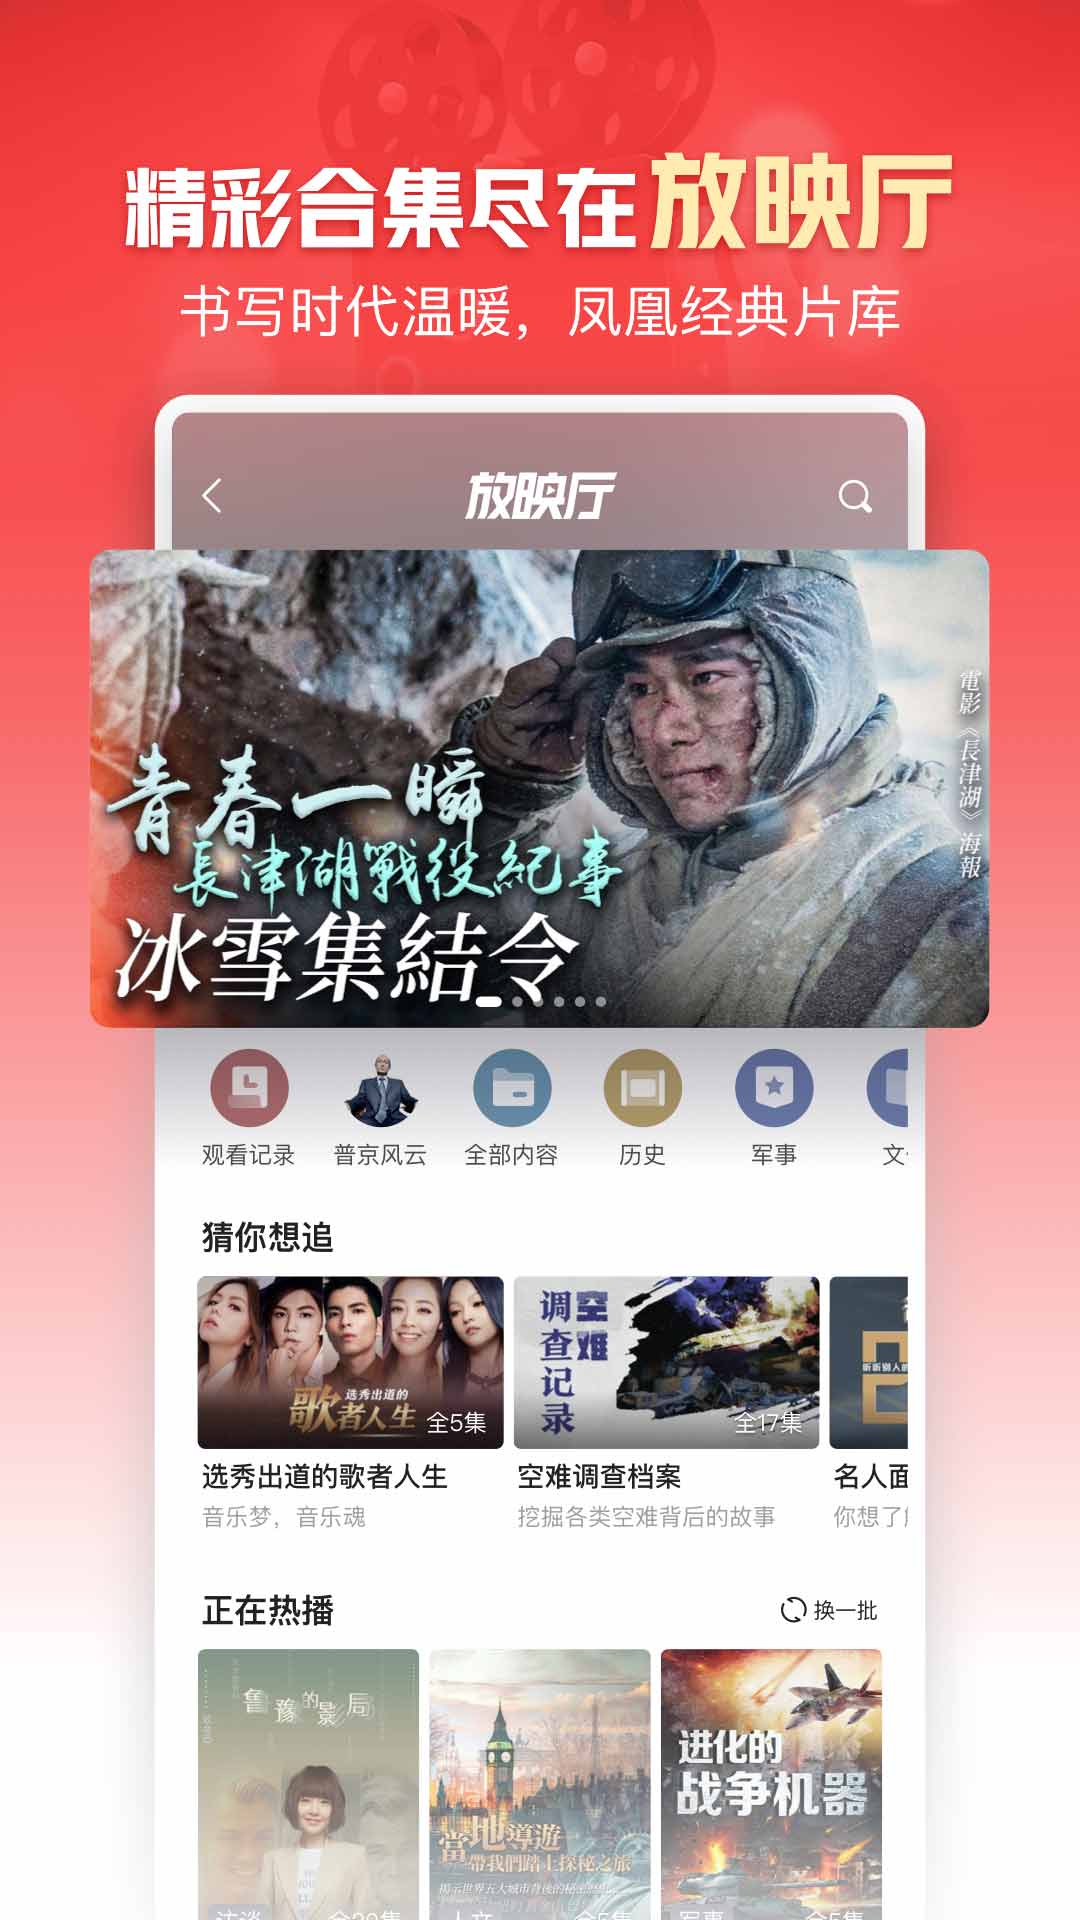 凤凰新闻app2